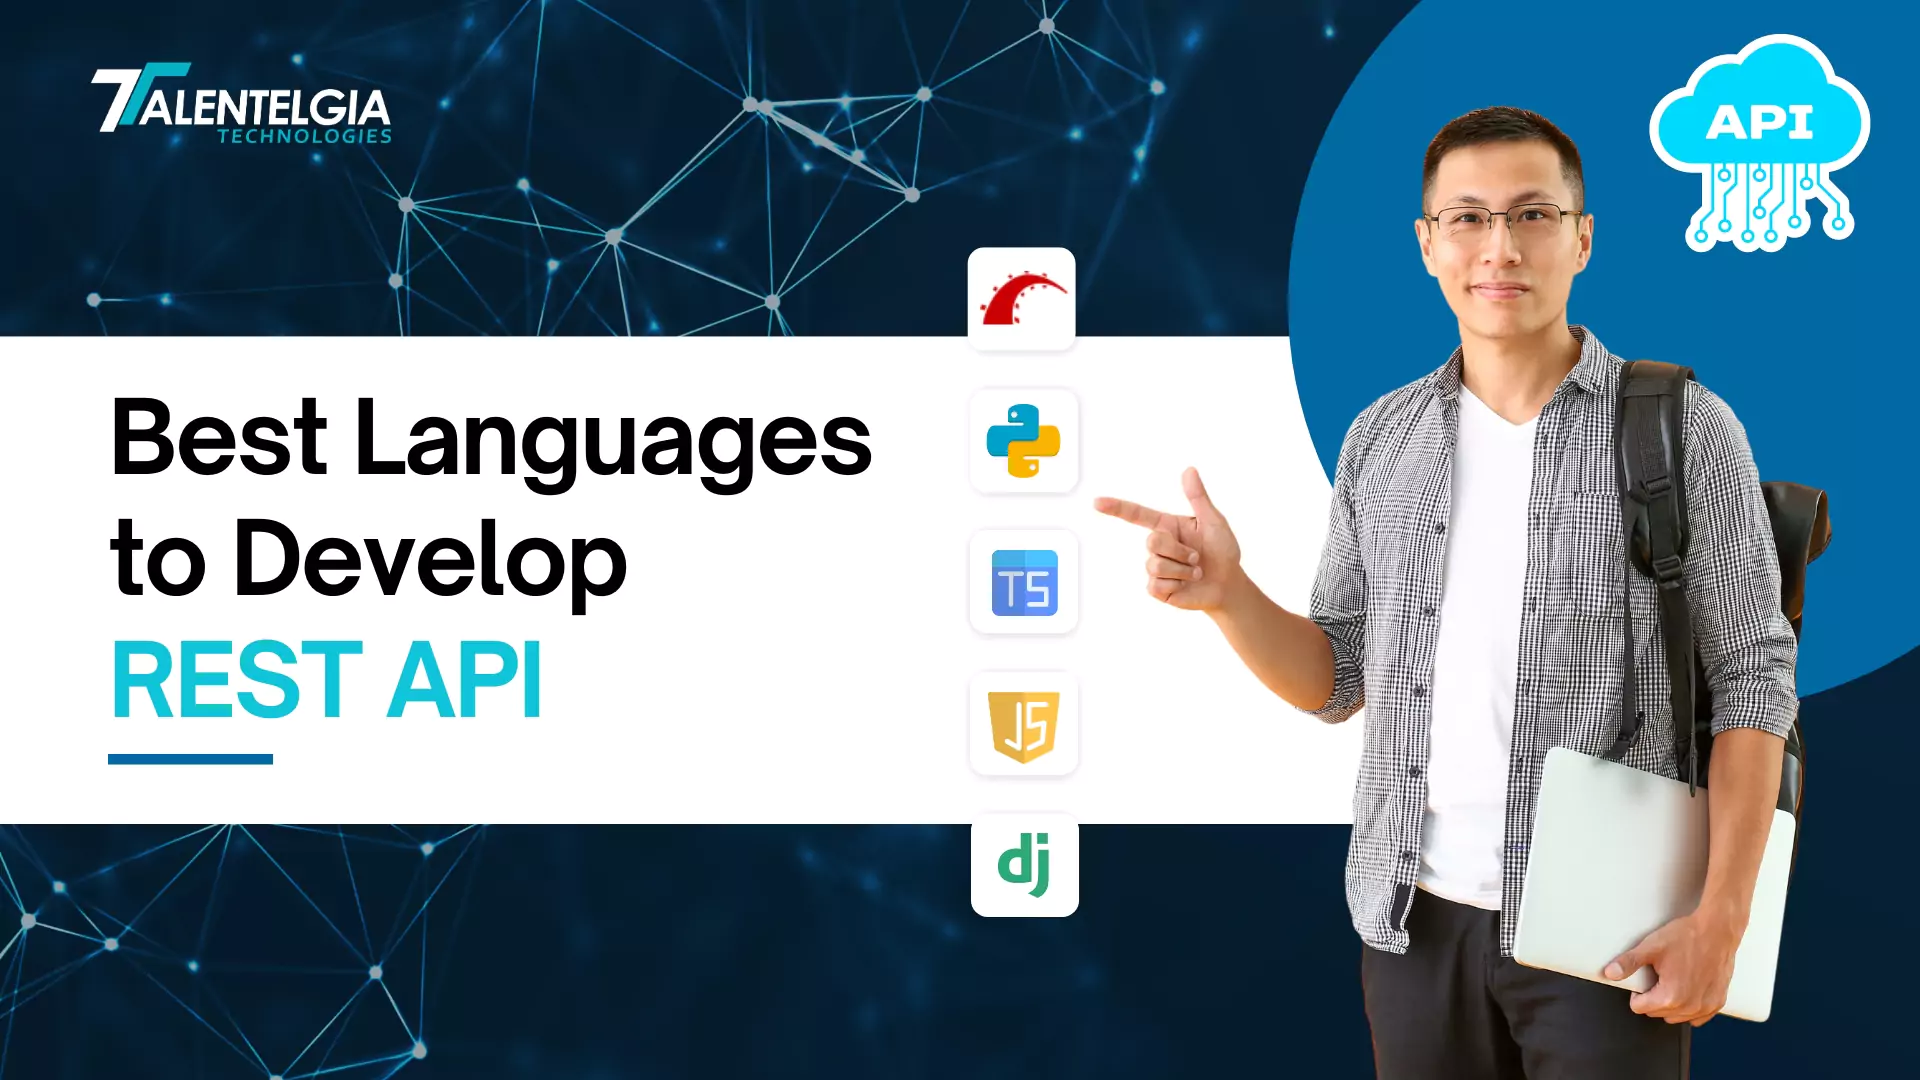 Best Languages to Develop REST APIs